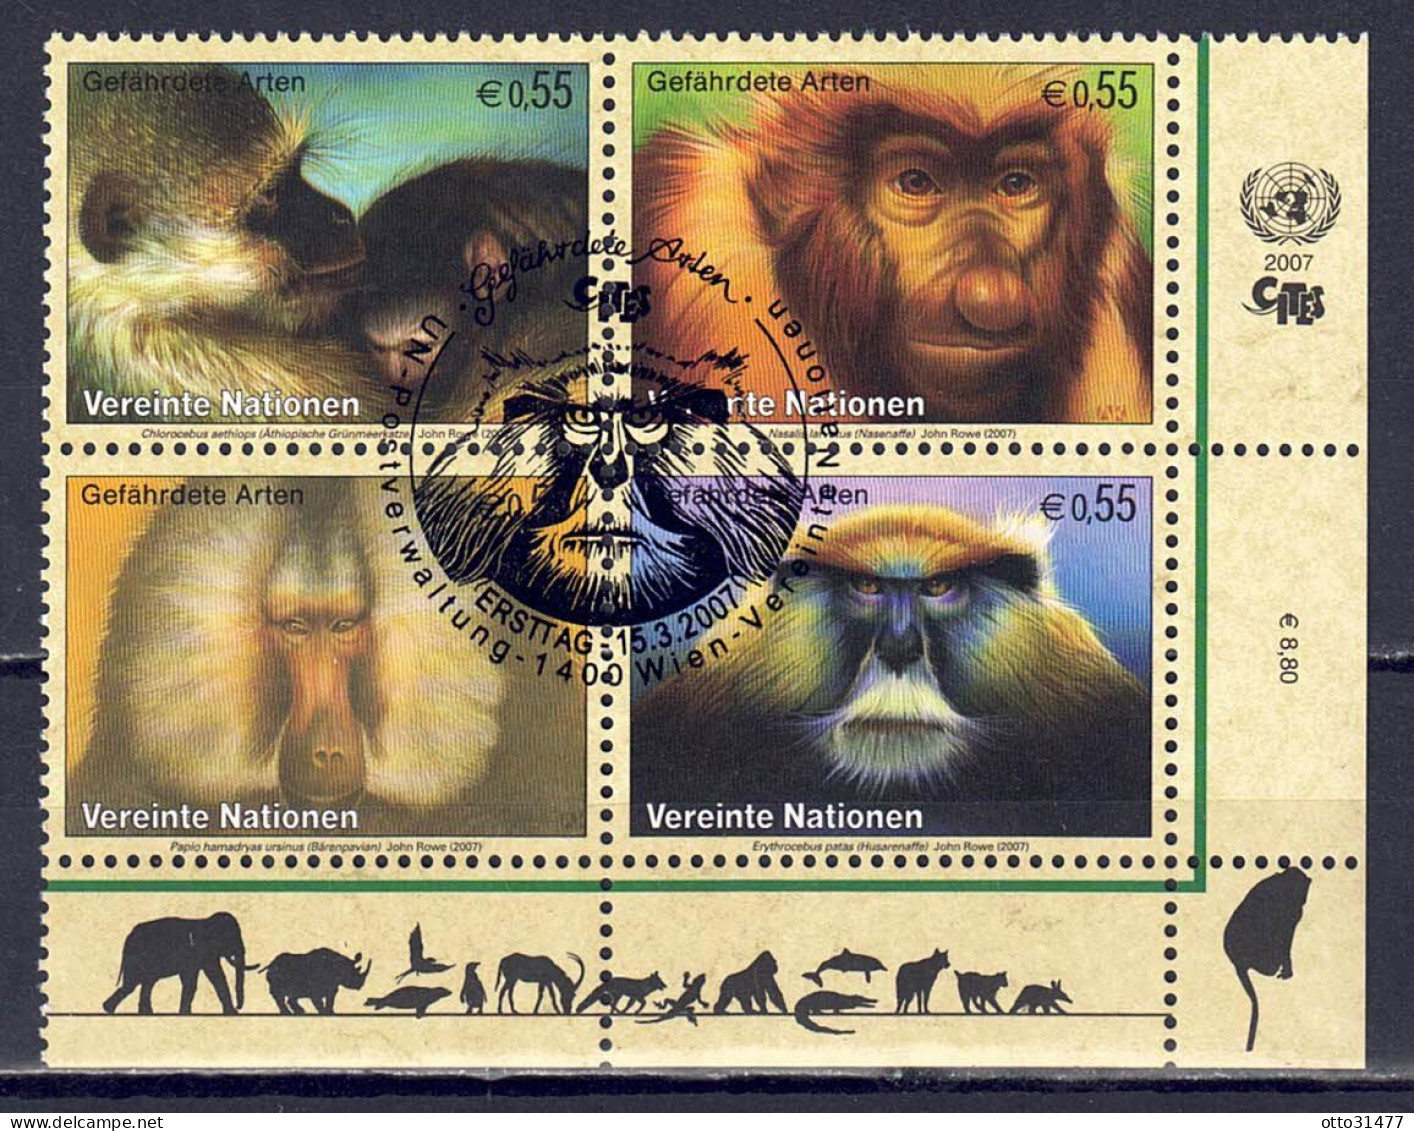 UNO Wien 2007 - Gefährdete Arten (XV) - Primaten, Nr. 485 - 488 Zd., Gestempelt / Used - Oblitérés